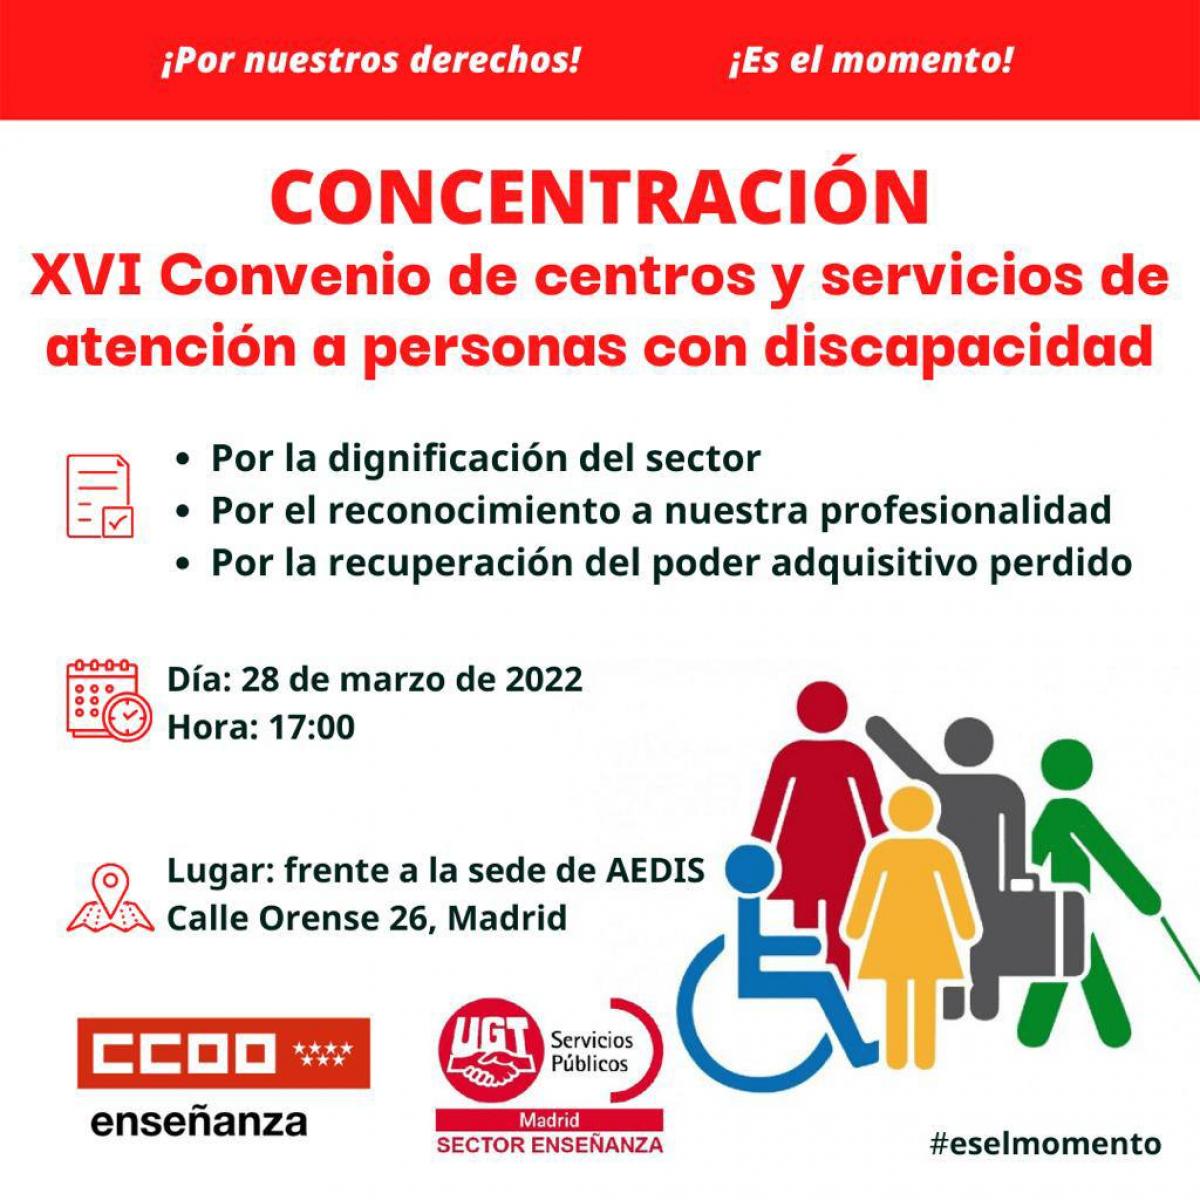 CONCENTRACIÓN: XVI Convenio de centros y servicios de atención a personas con discapacidad